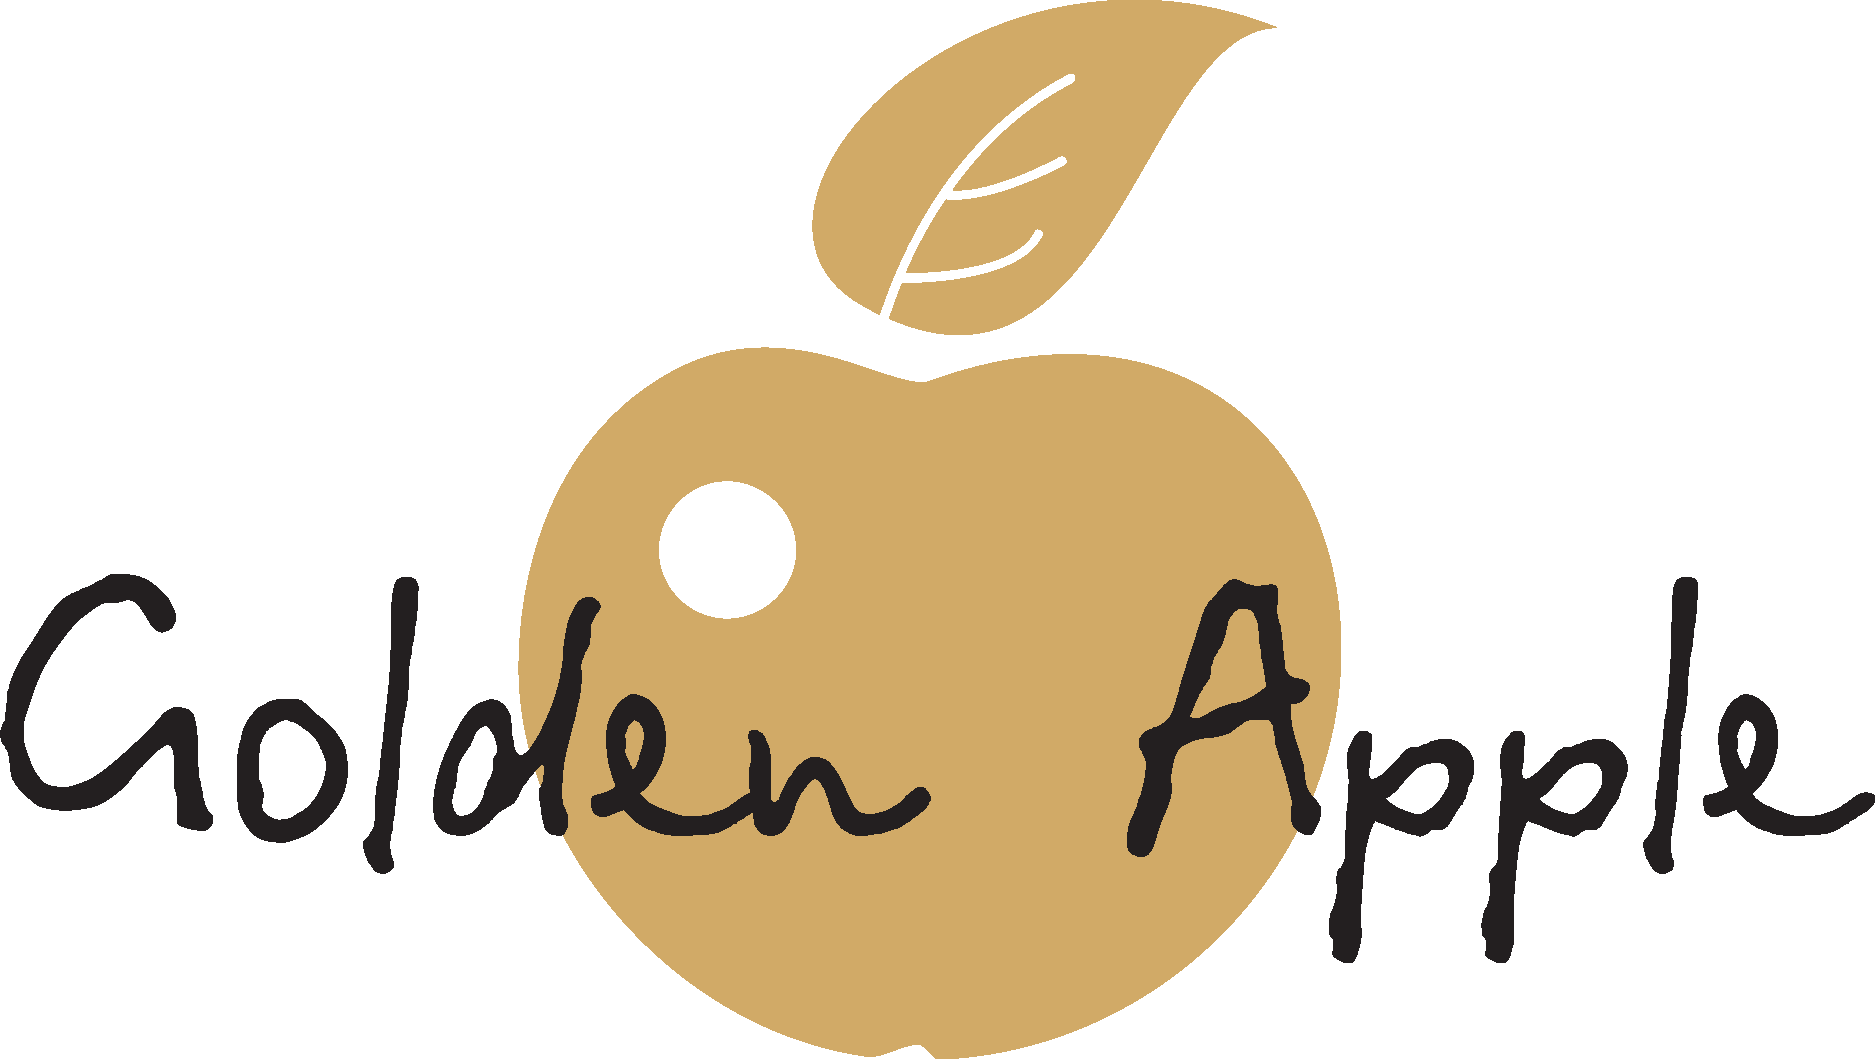 Goldapple логотип. Значок золотого яблока. Золотое яблоко logo. Золотое яблоко логотип прозрачный. Привет в золотом яблоке